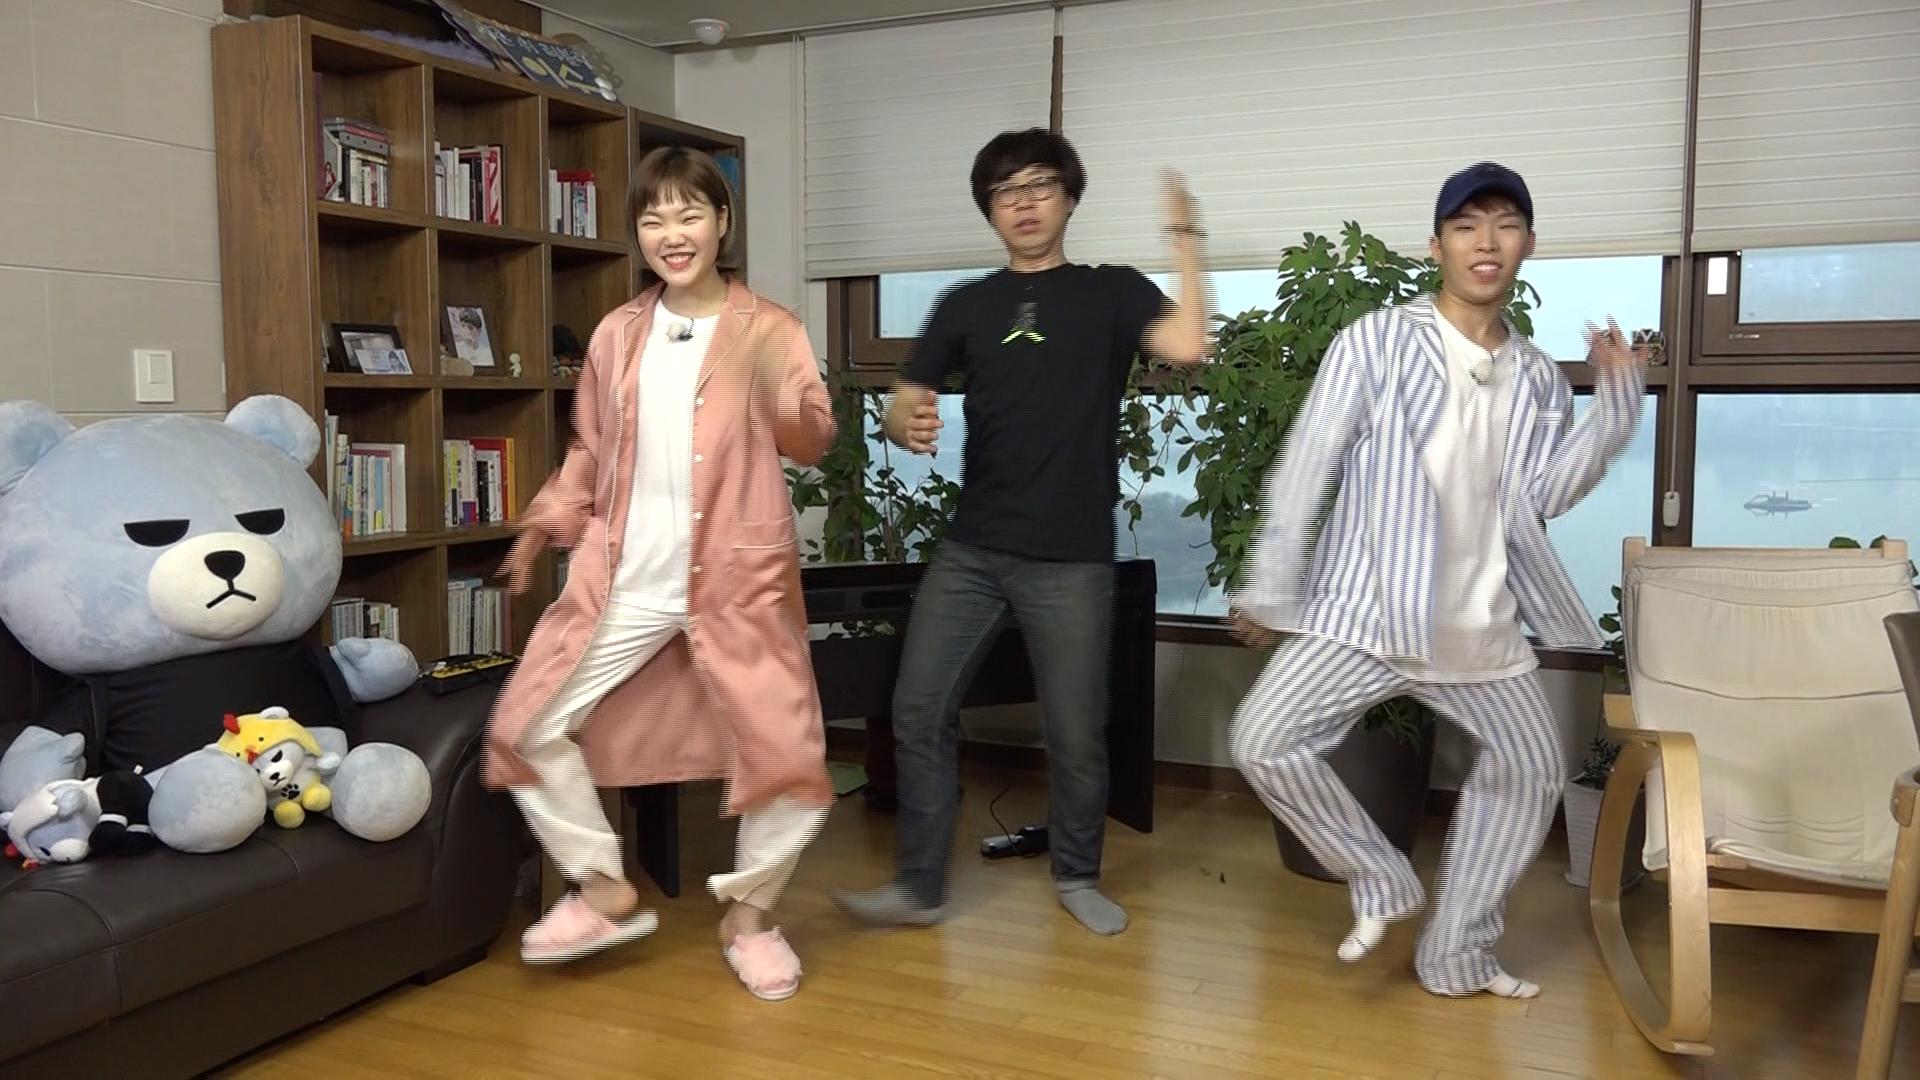 악동뮤지션이 공개한 양현석 대표의 댄스 포인트는?